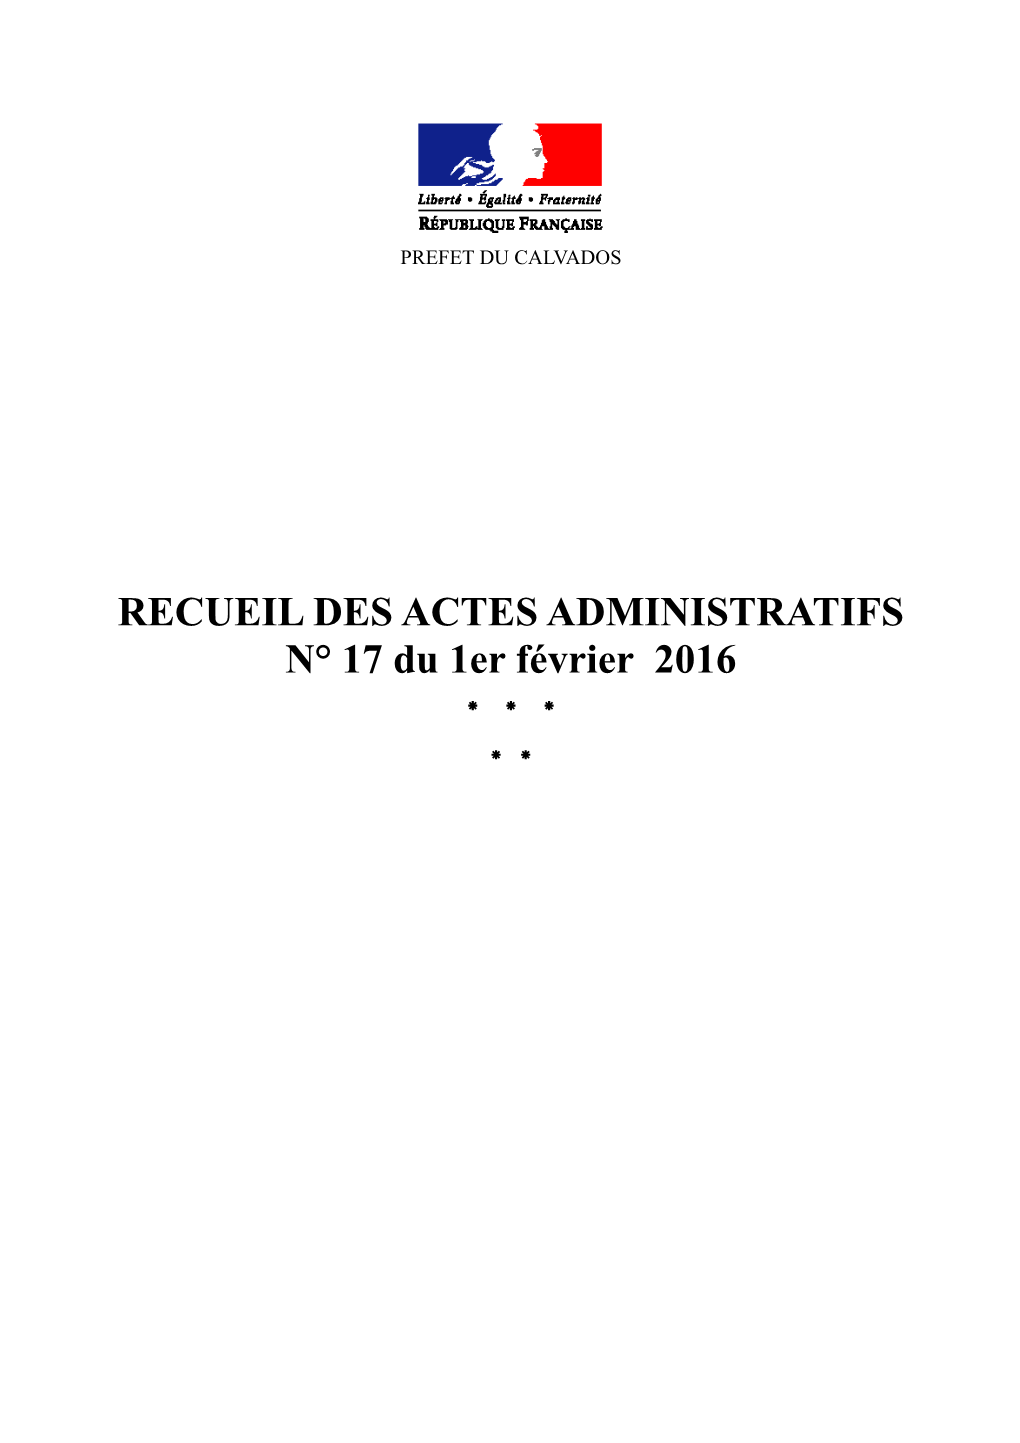 RECUEIL DES ACTES ADMINISTRATIFS N° 17 Du 1Er Février 2016 * * * * * S O M M a I R E